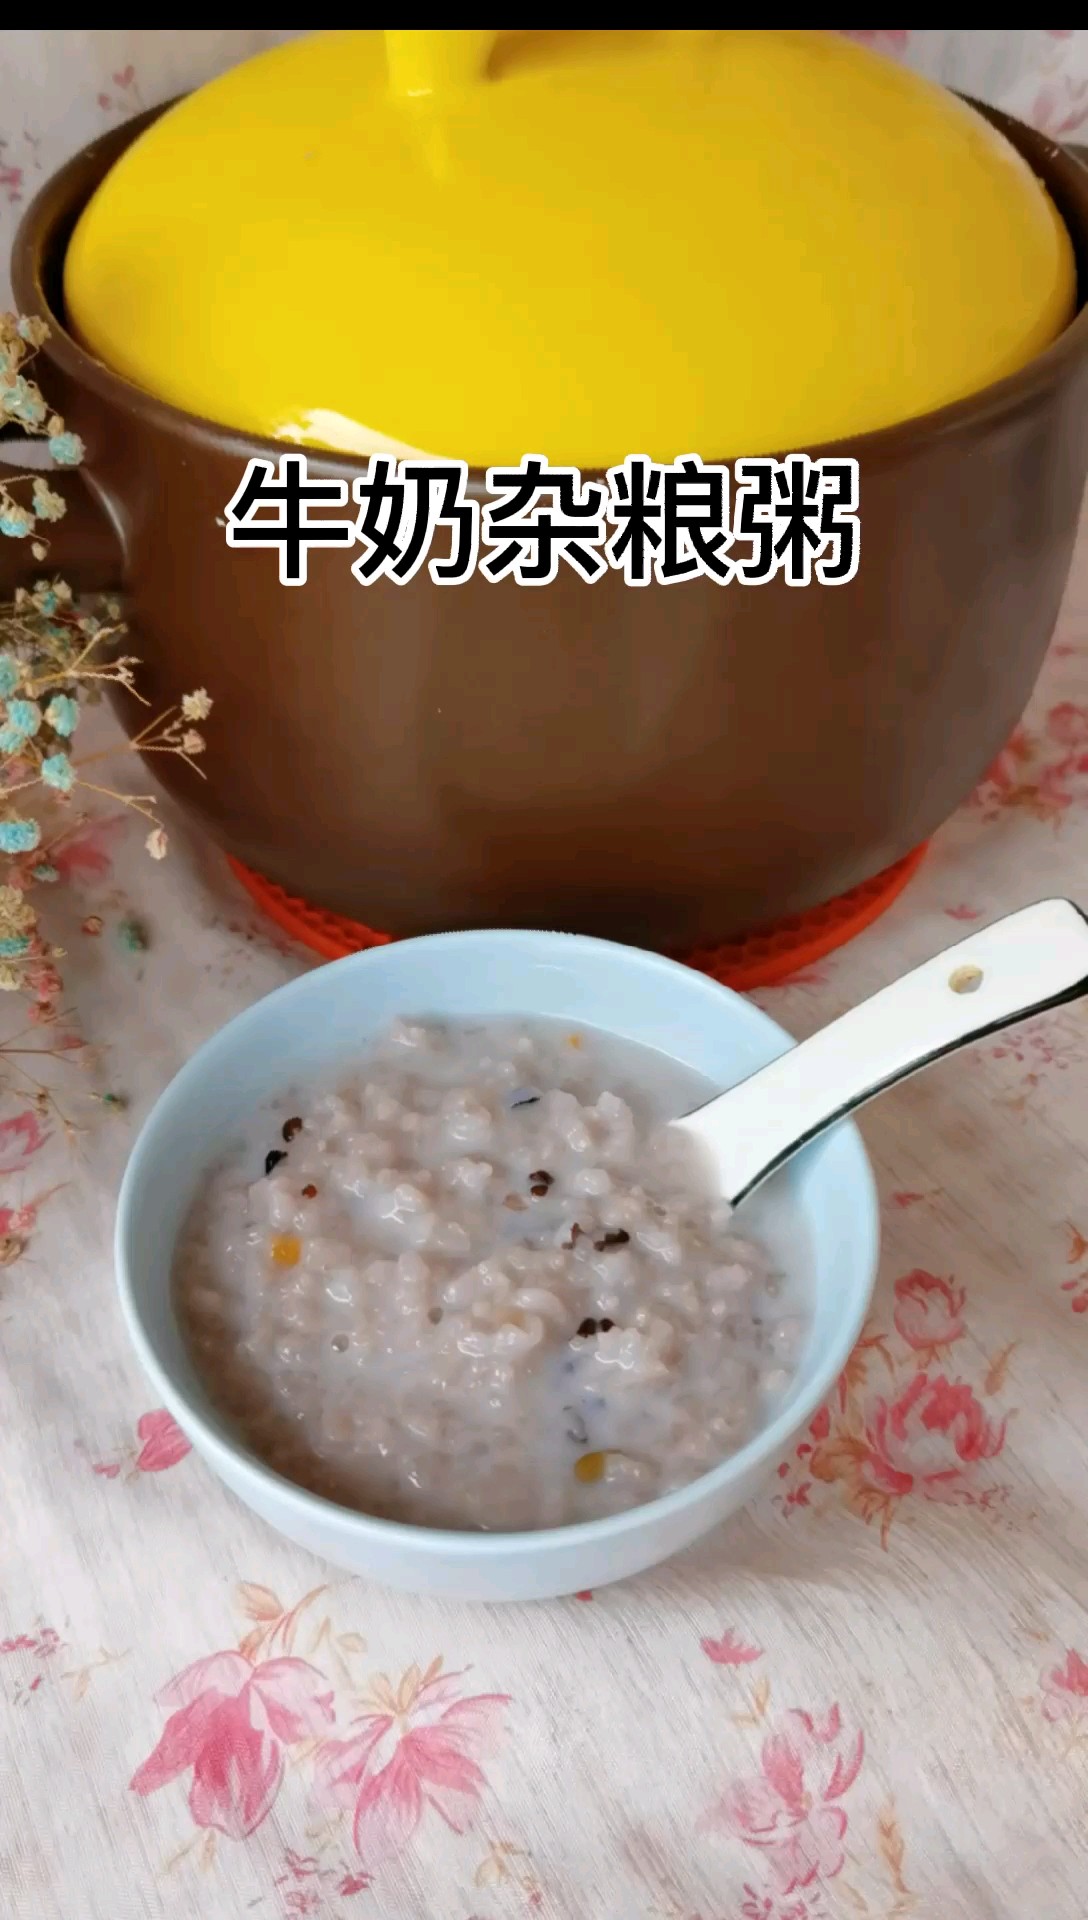 Milk Porridge recipe